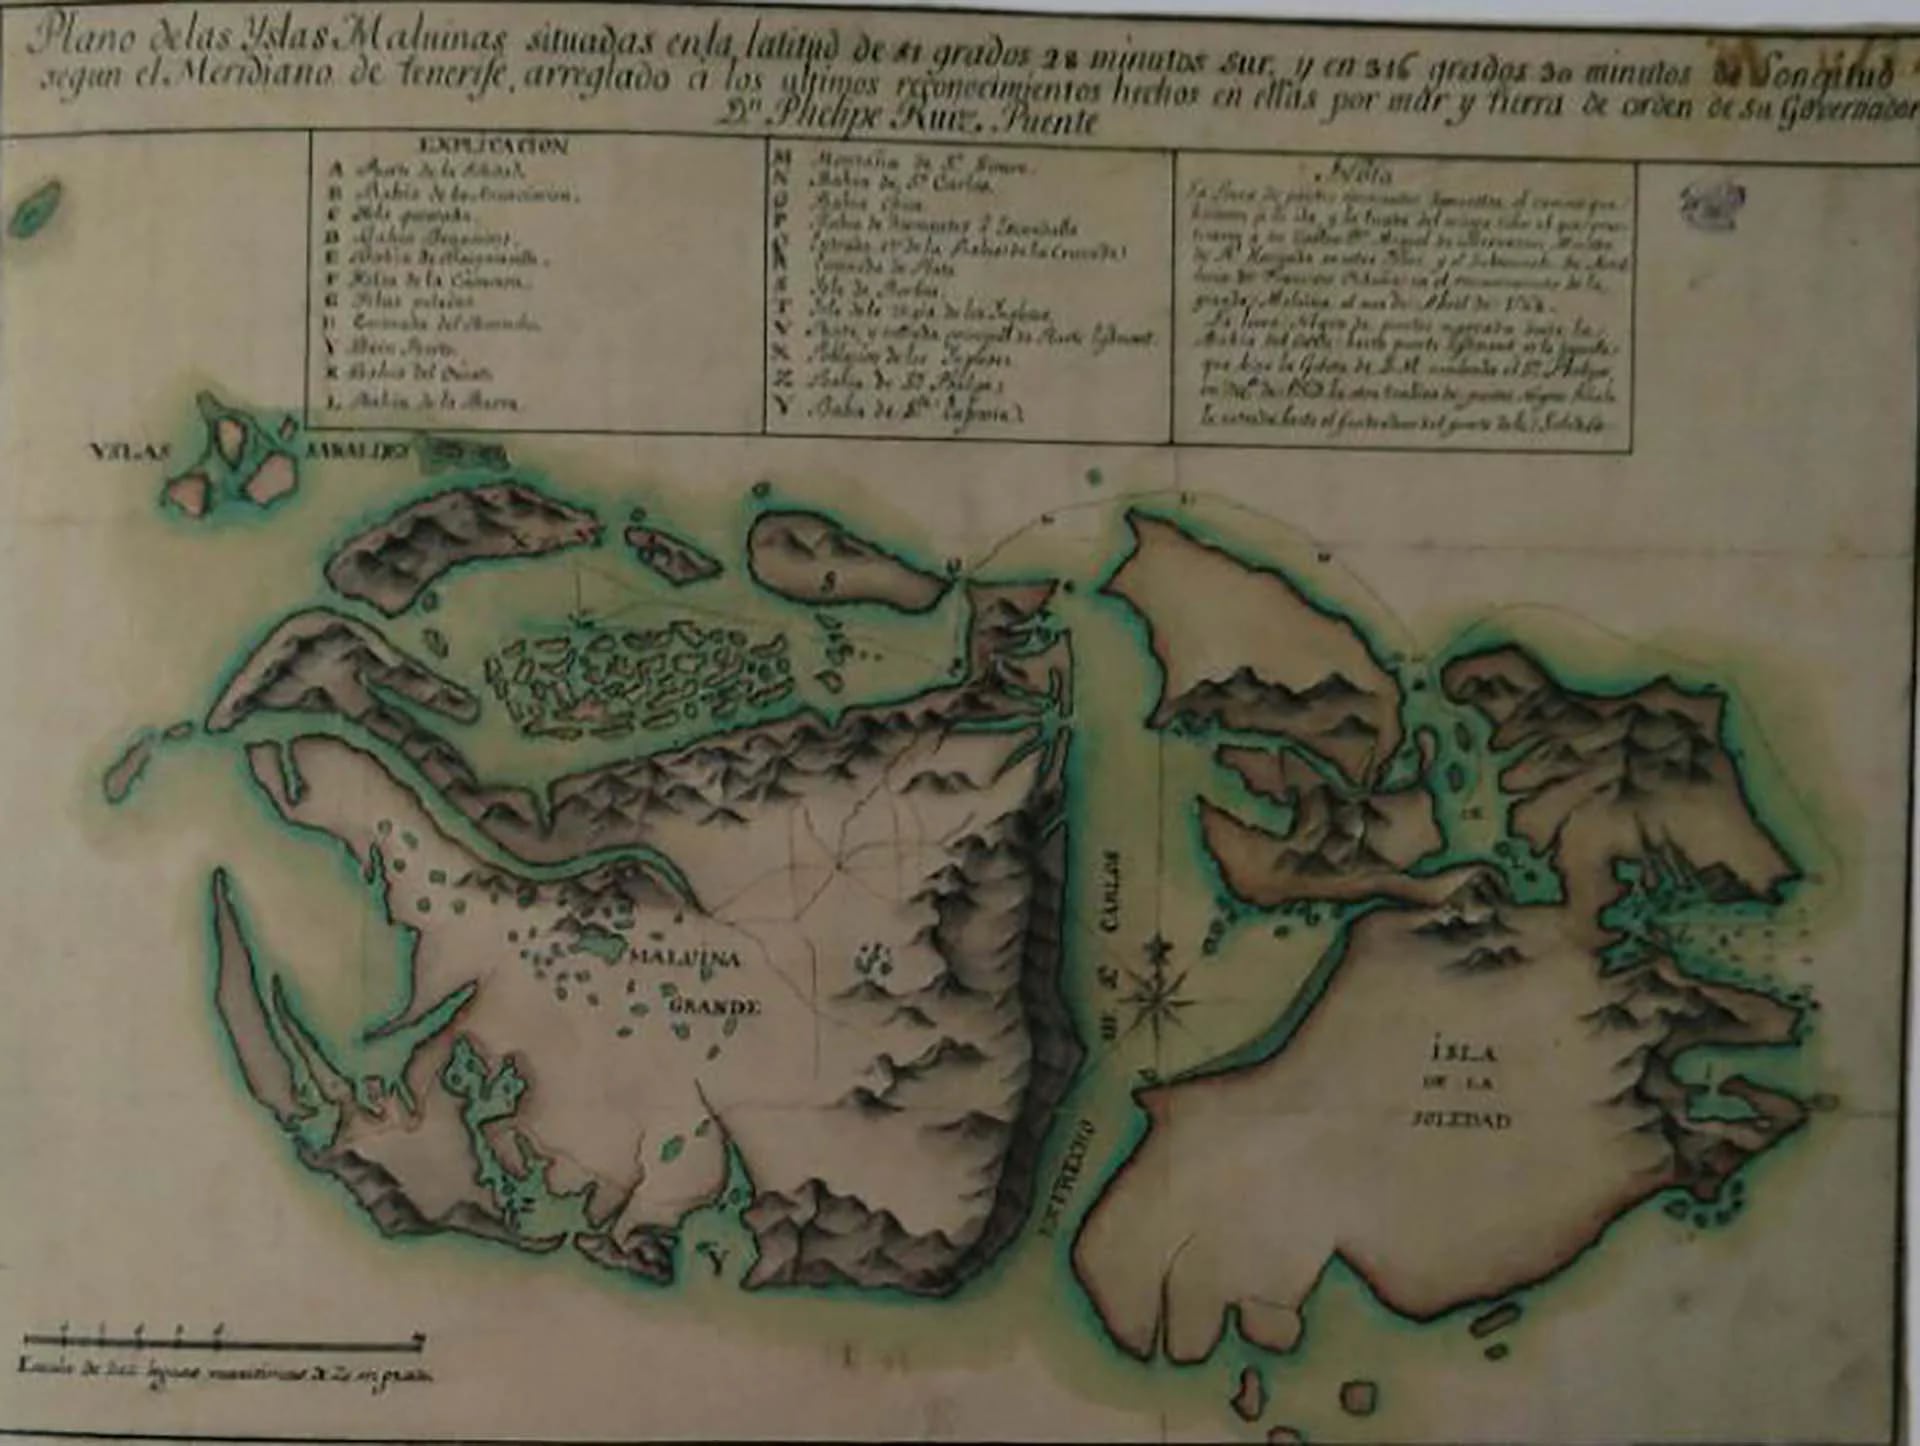 Plano de las islas Malvinas. Real Escuela de Navegación de Cádiz, c. 1770